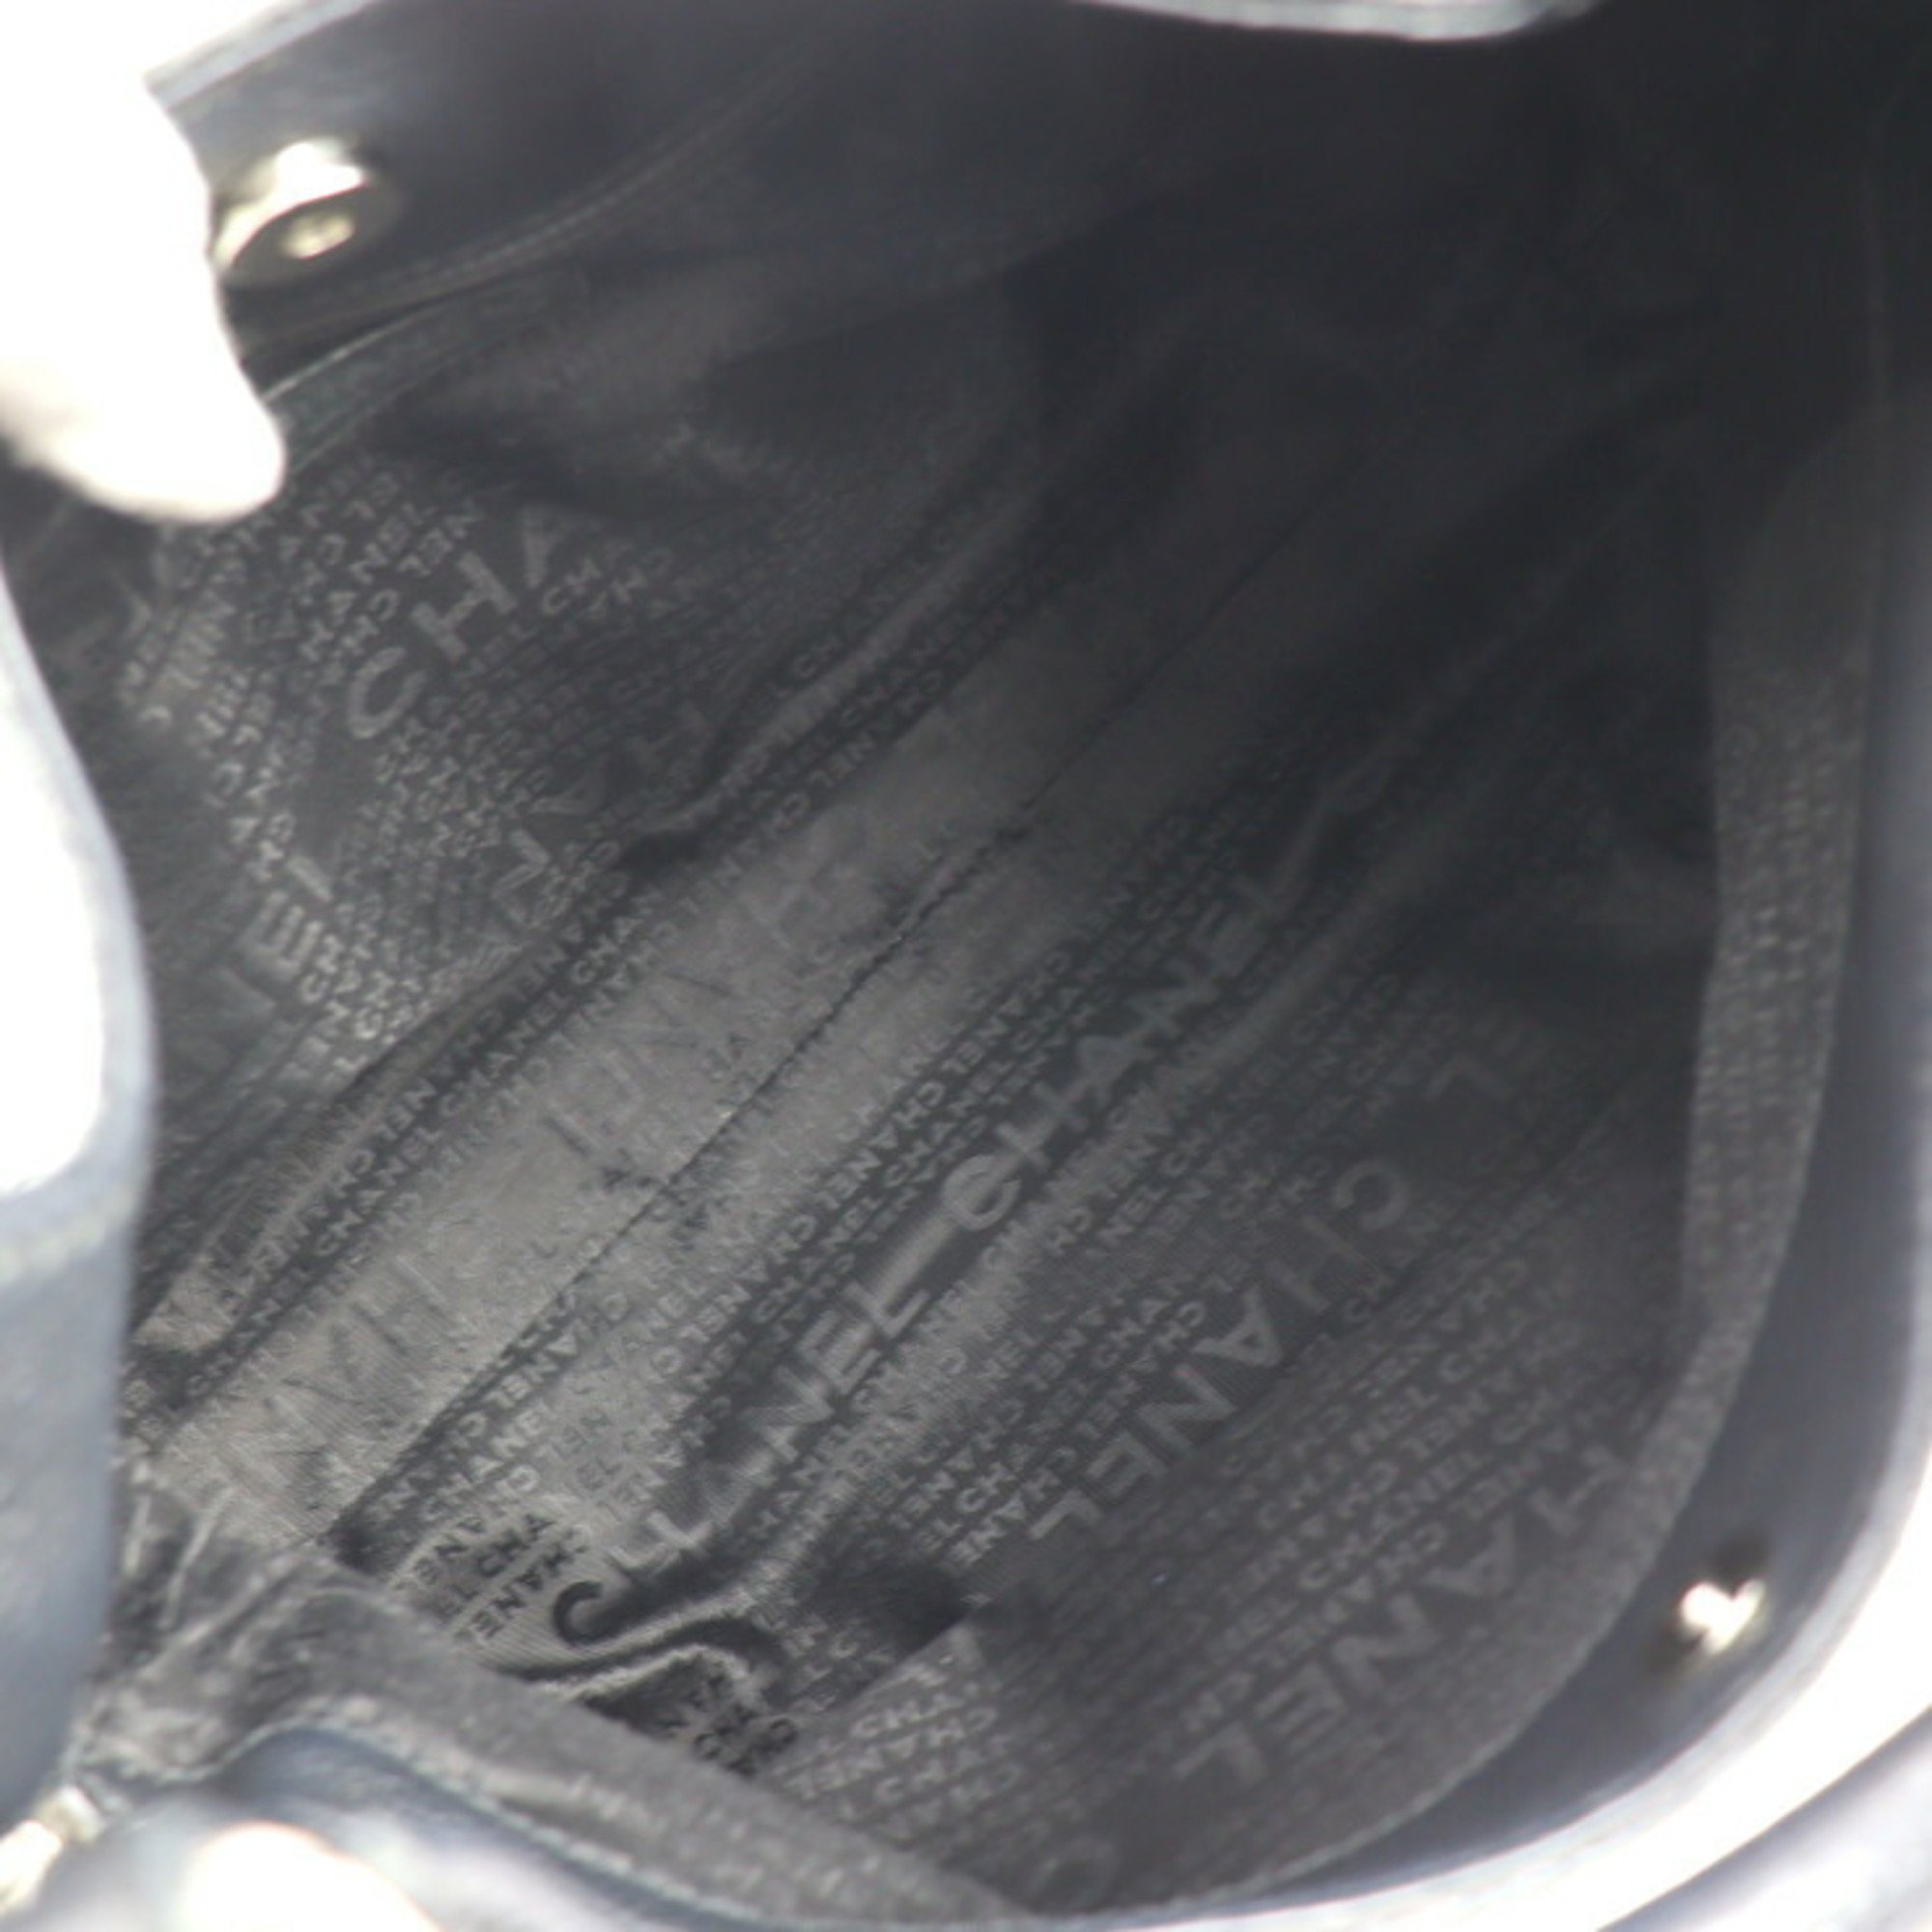 CHANEL Handbag Leather Black Silver Hardware Shoulder Tote Bag Side Zipper Cube Tassel Fringe Coco Mark Logo